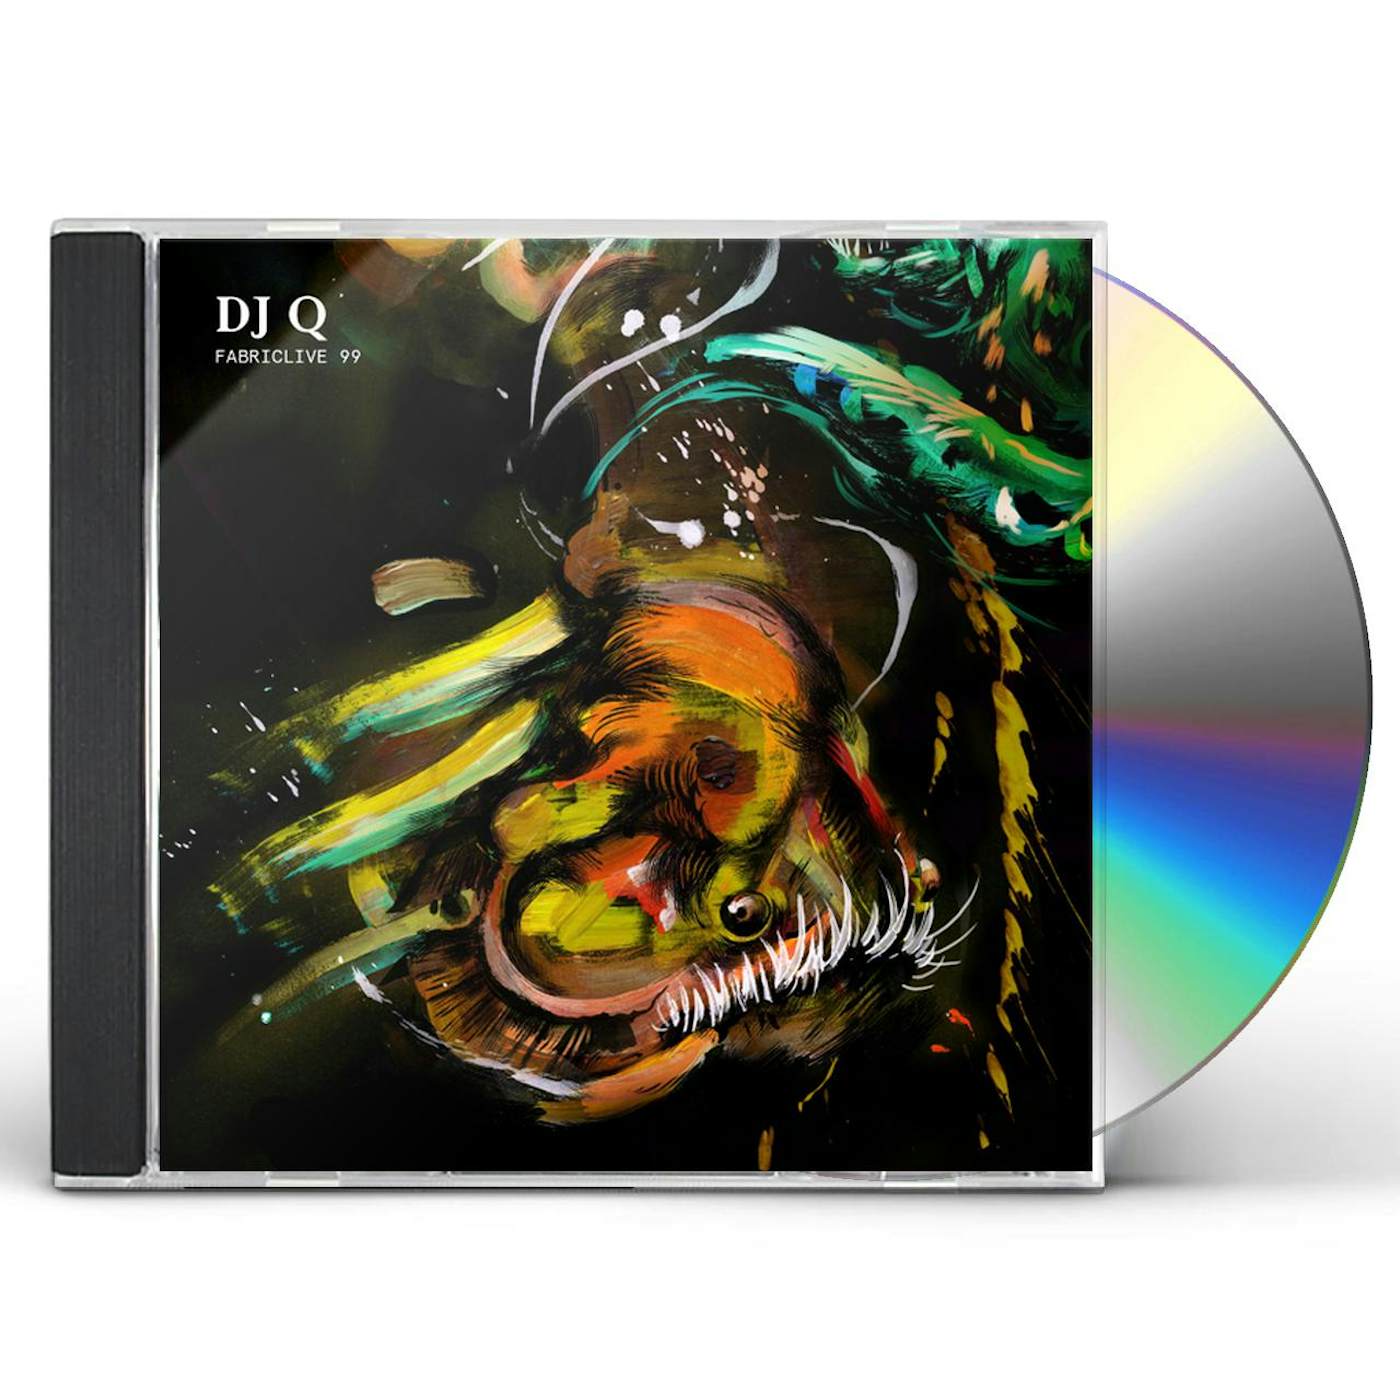 DJ Q FABRICLIVE 99 CD